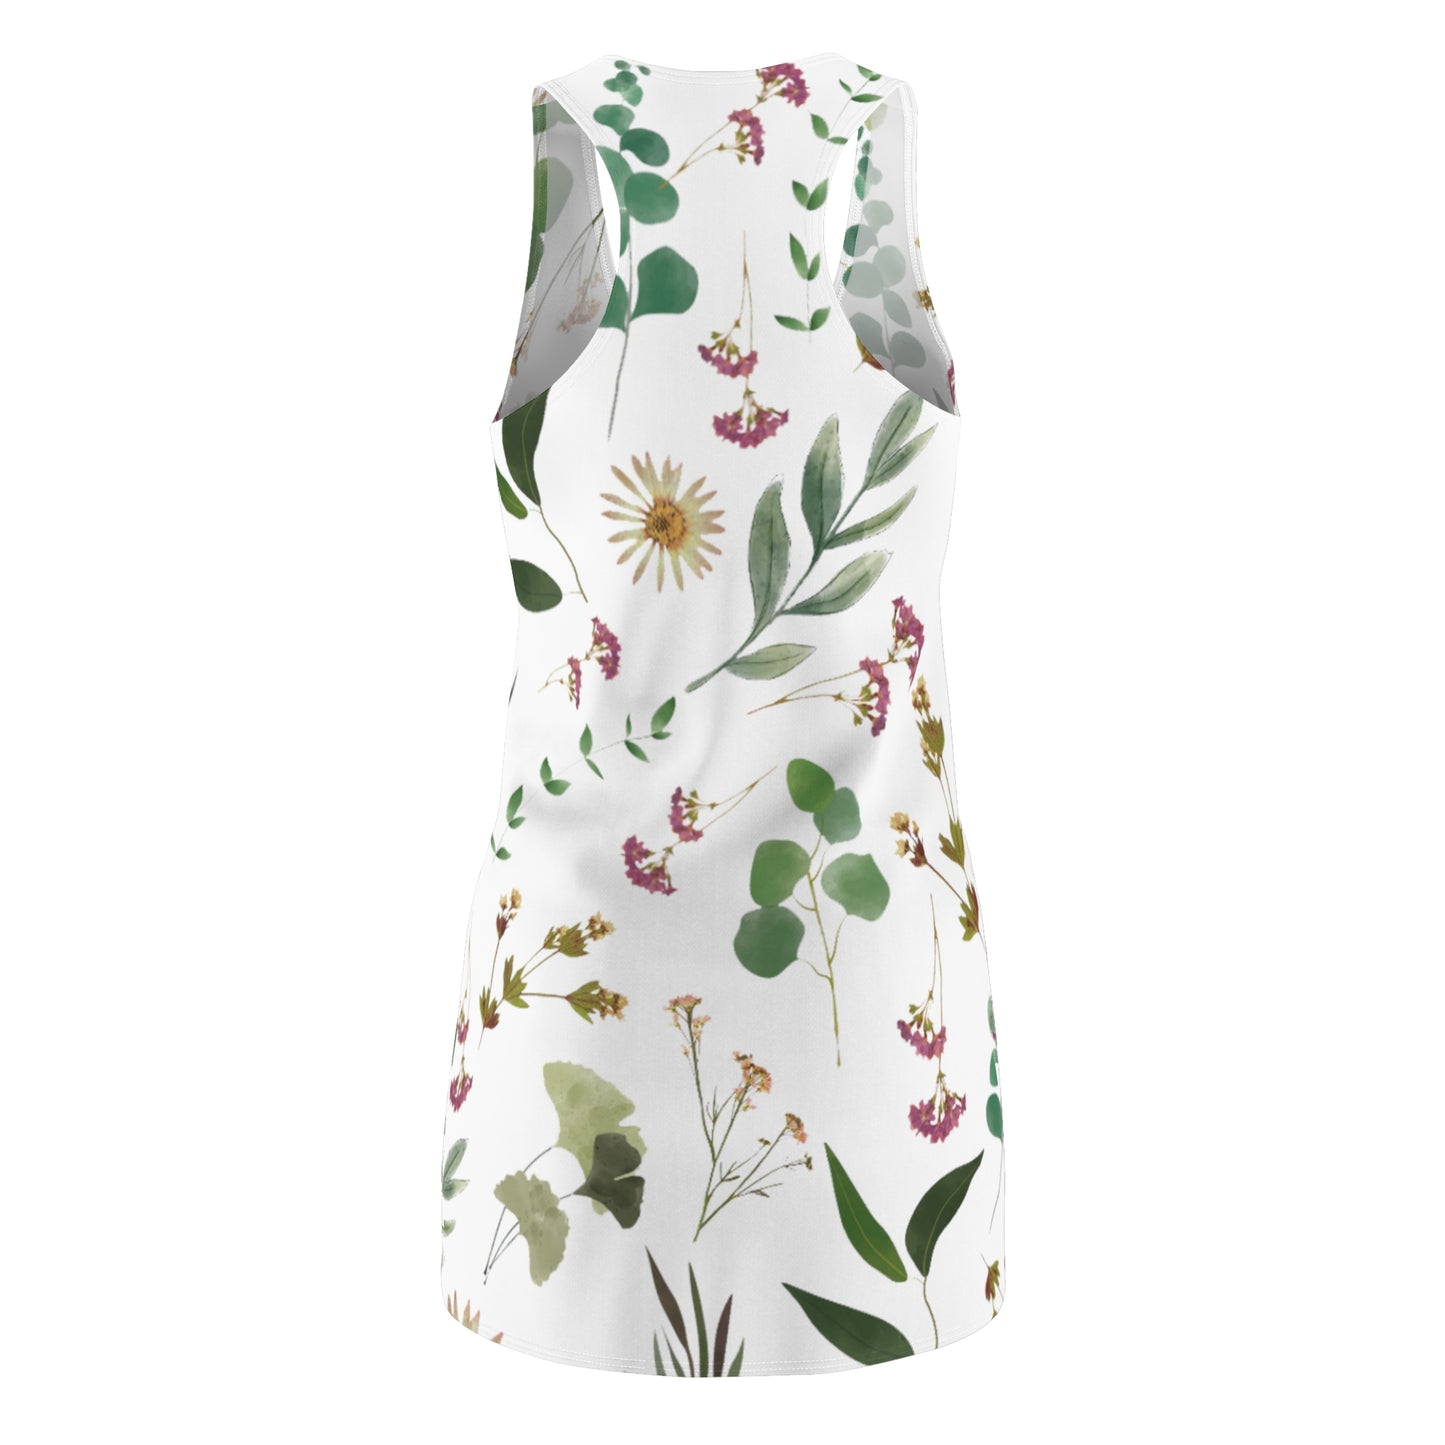 Flower and Leaf Pattern Women's Cut & Sew Racerback Dress